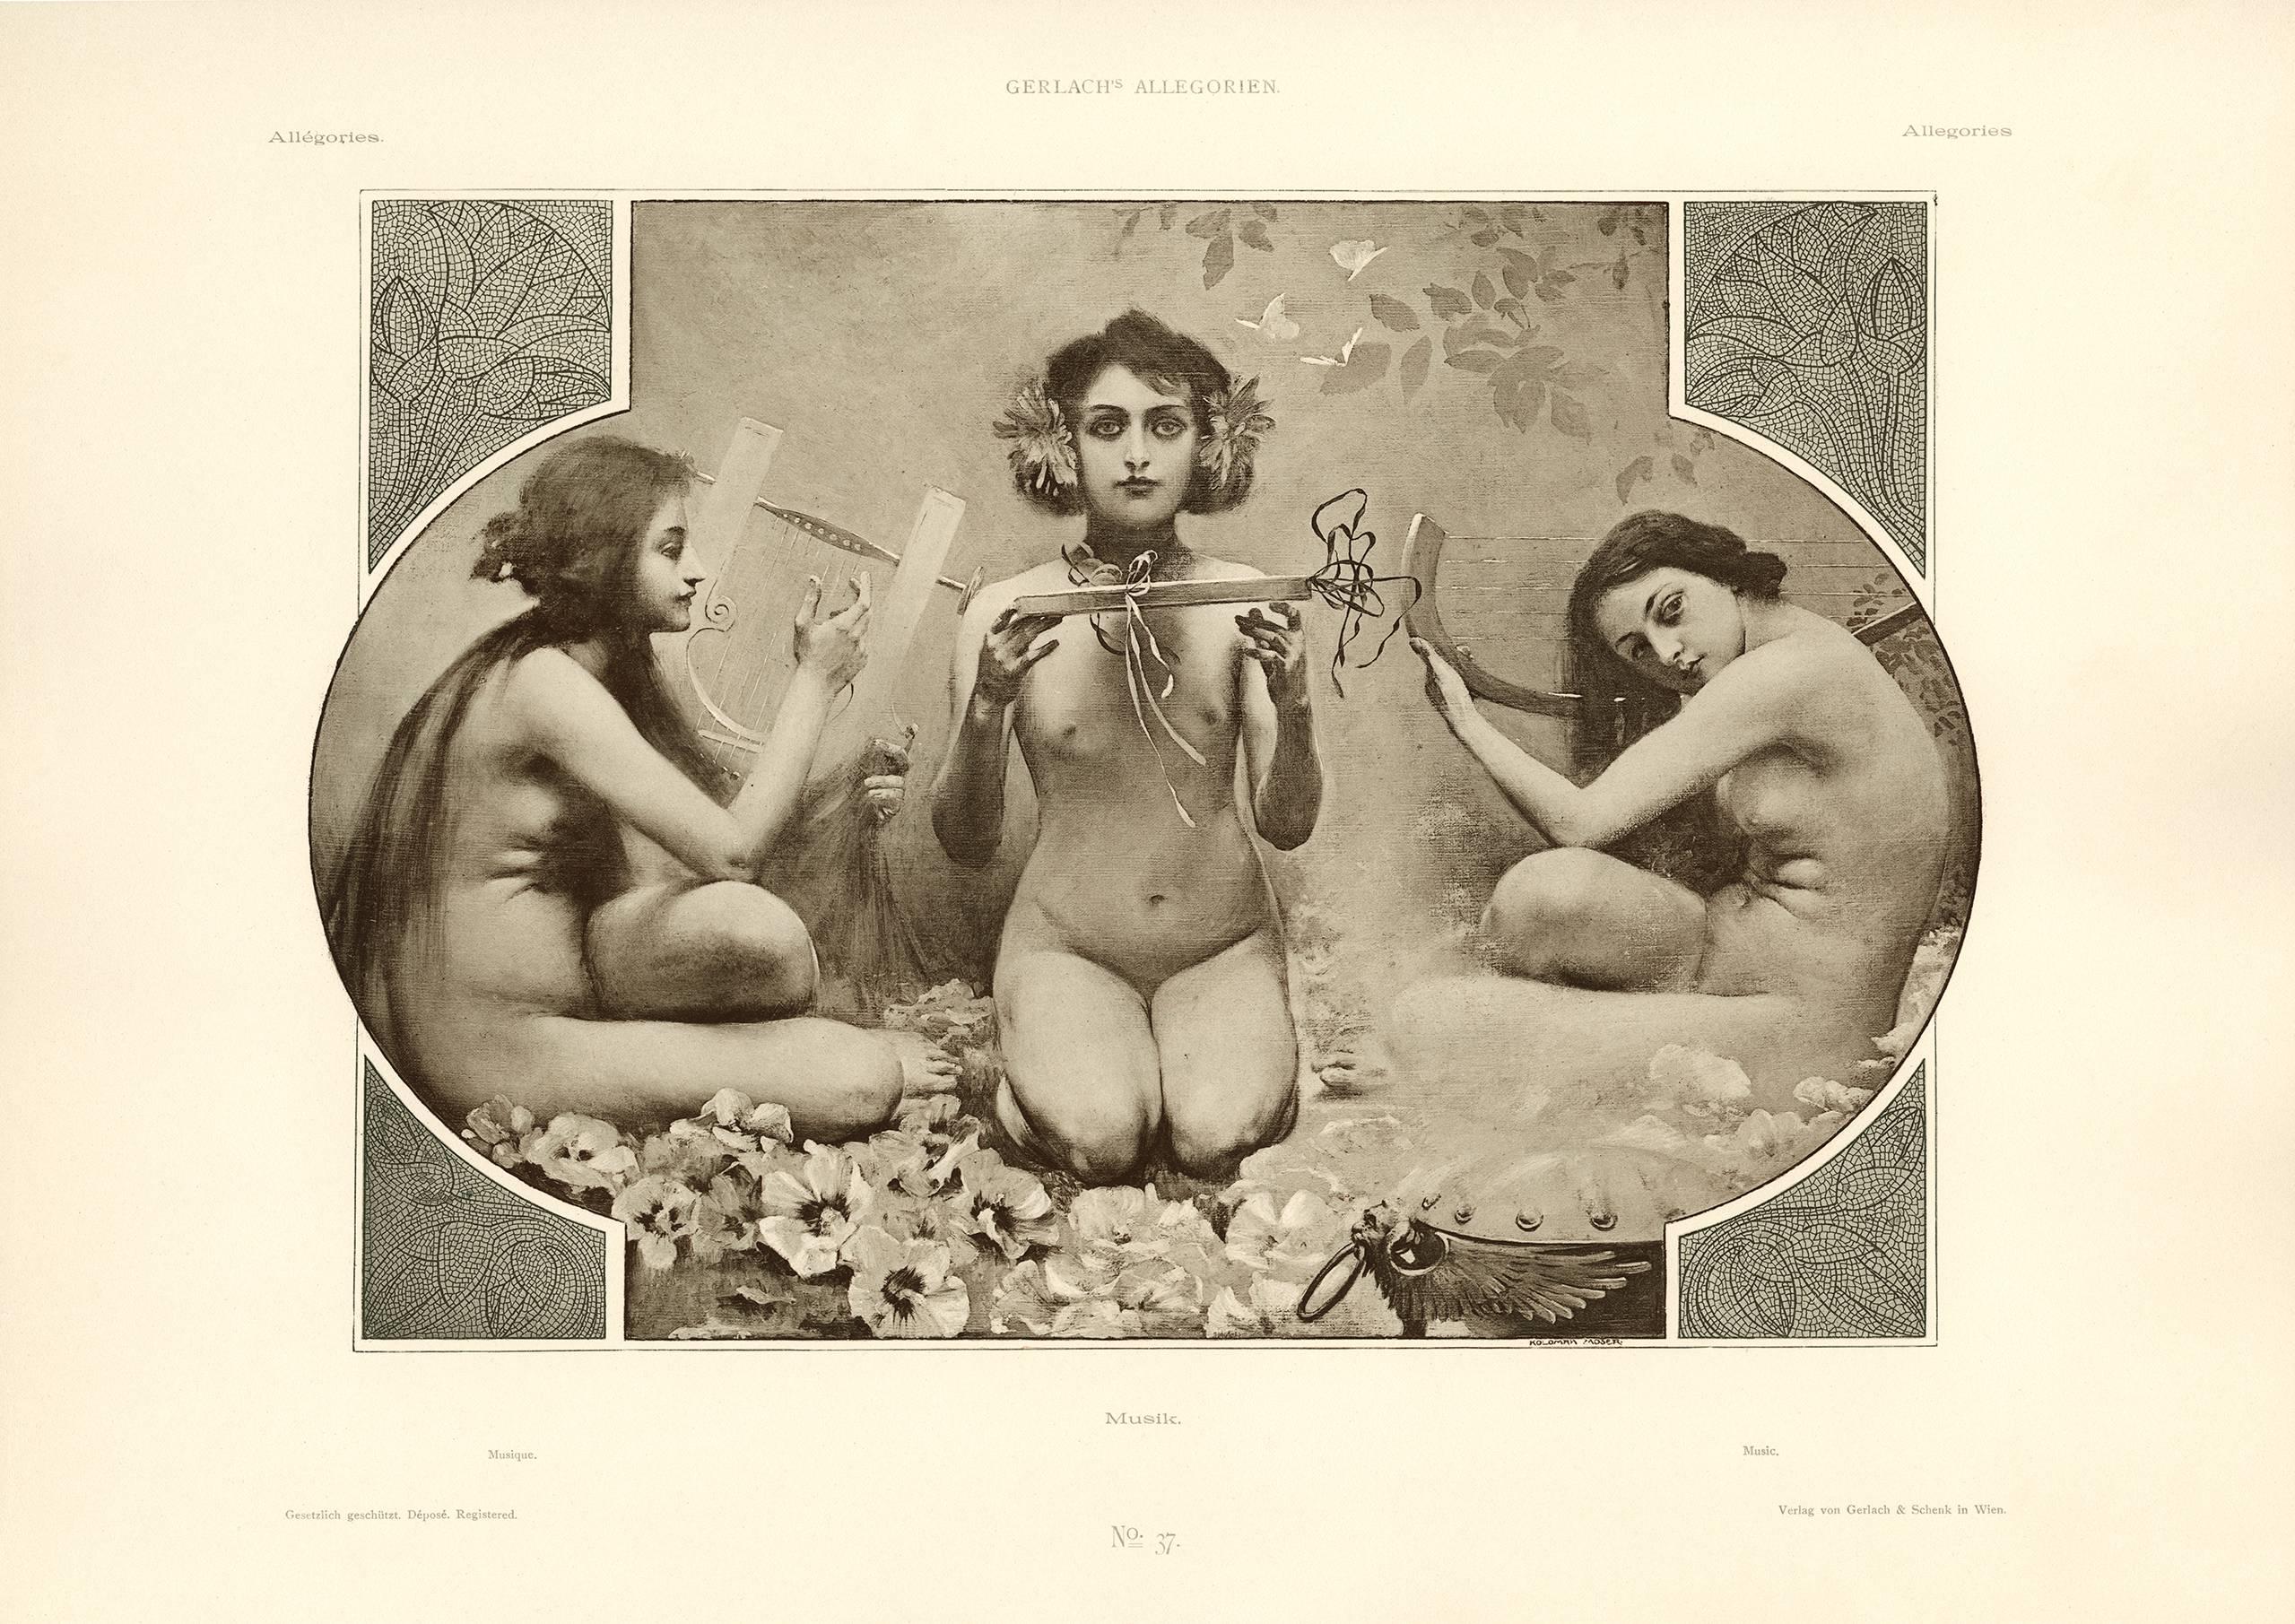 Gerlach's Allegorien Plate #37: "Music" Lithograph